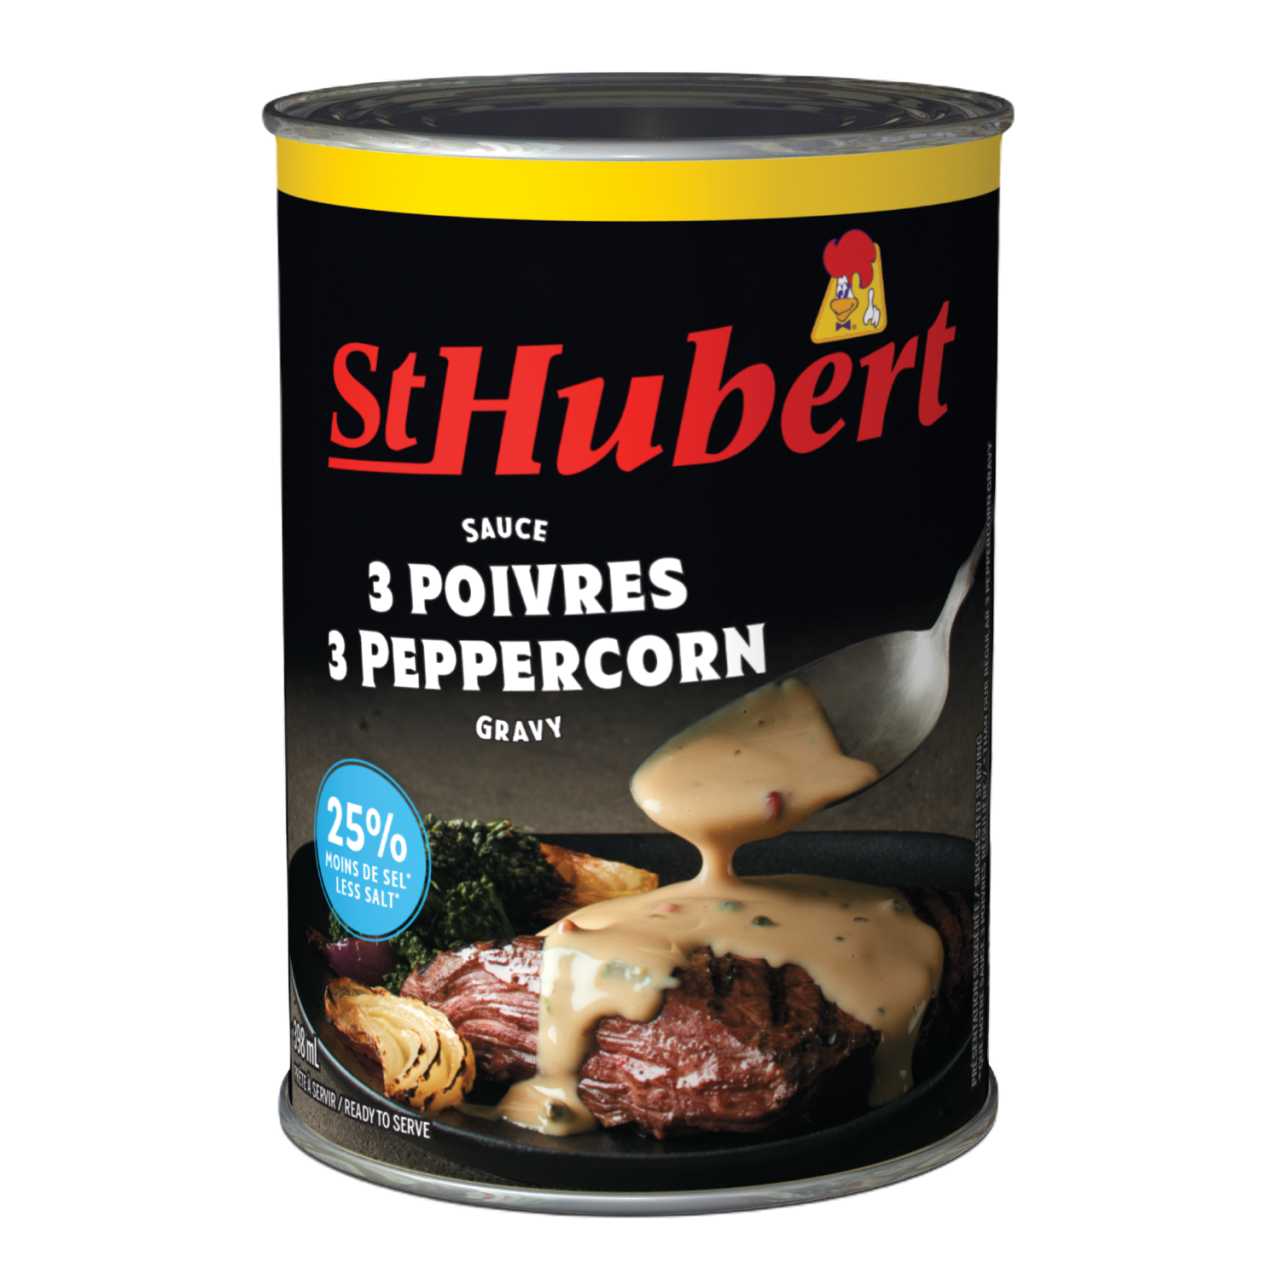 St-Hubert 3 Peppercorn Gravy Mix 25% Less Salt